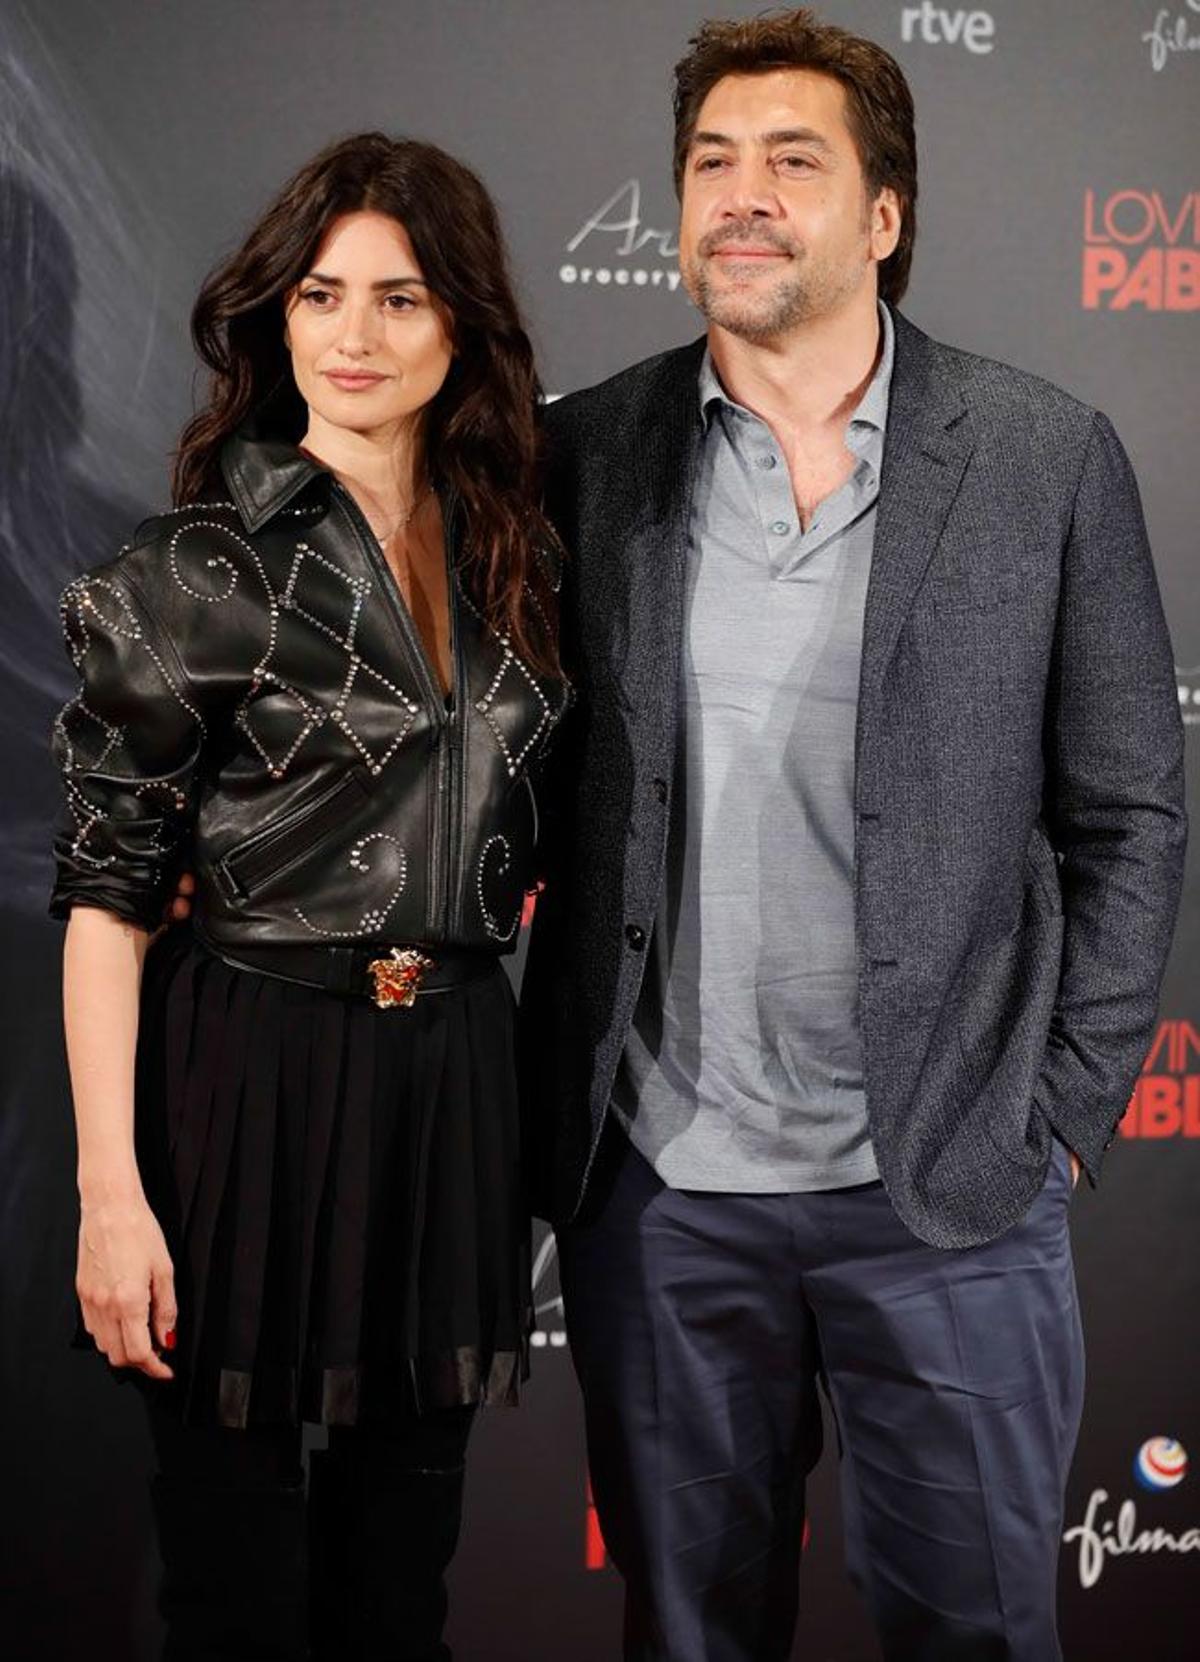 Javier Bardem y Penélope Cruz presentan 'Loving Pablo' en Madrid